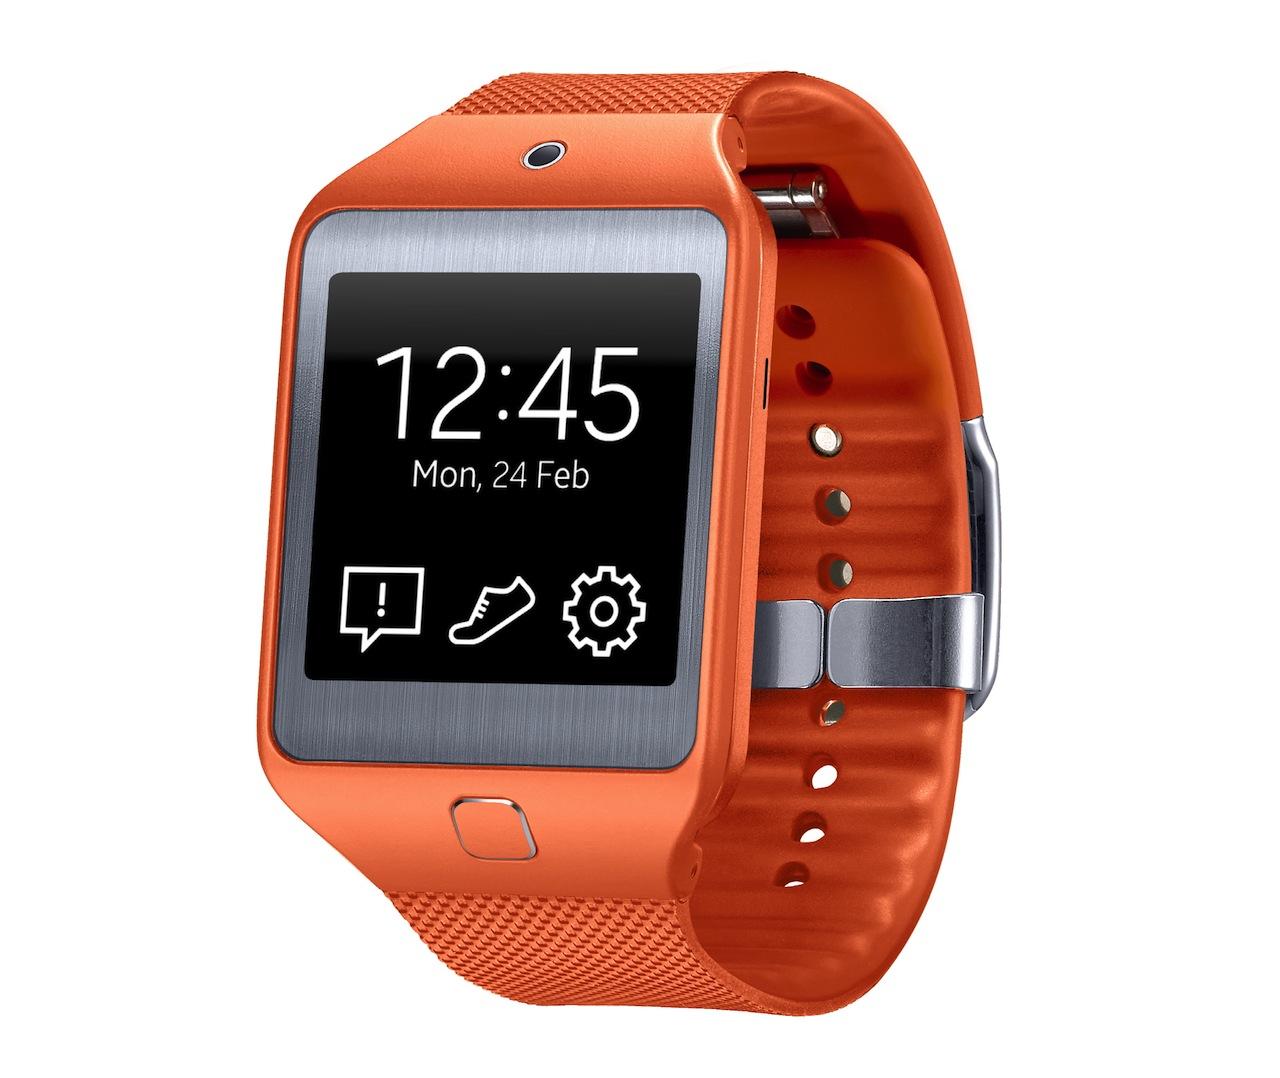 Verdienen Agrarisch cap Samsung Gear 2 and Gear 2 Neo smartwatches official - SlashGear